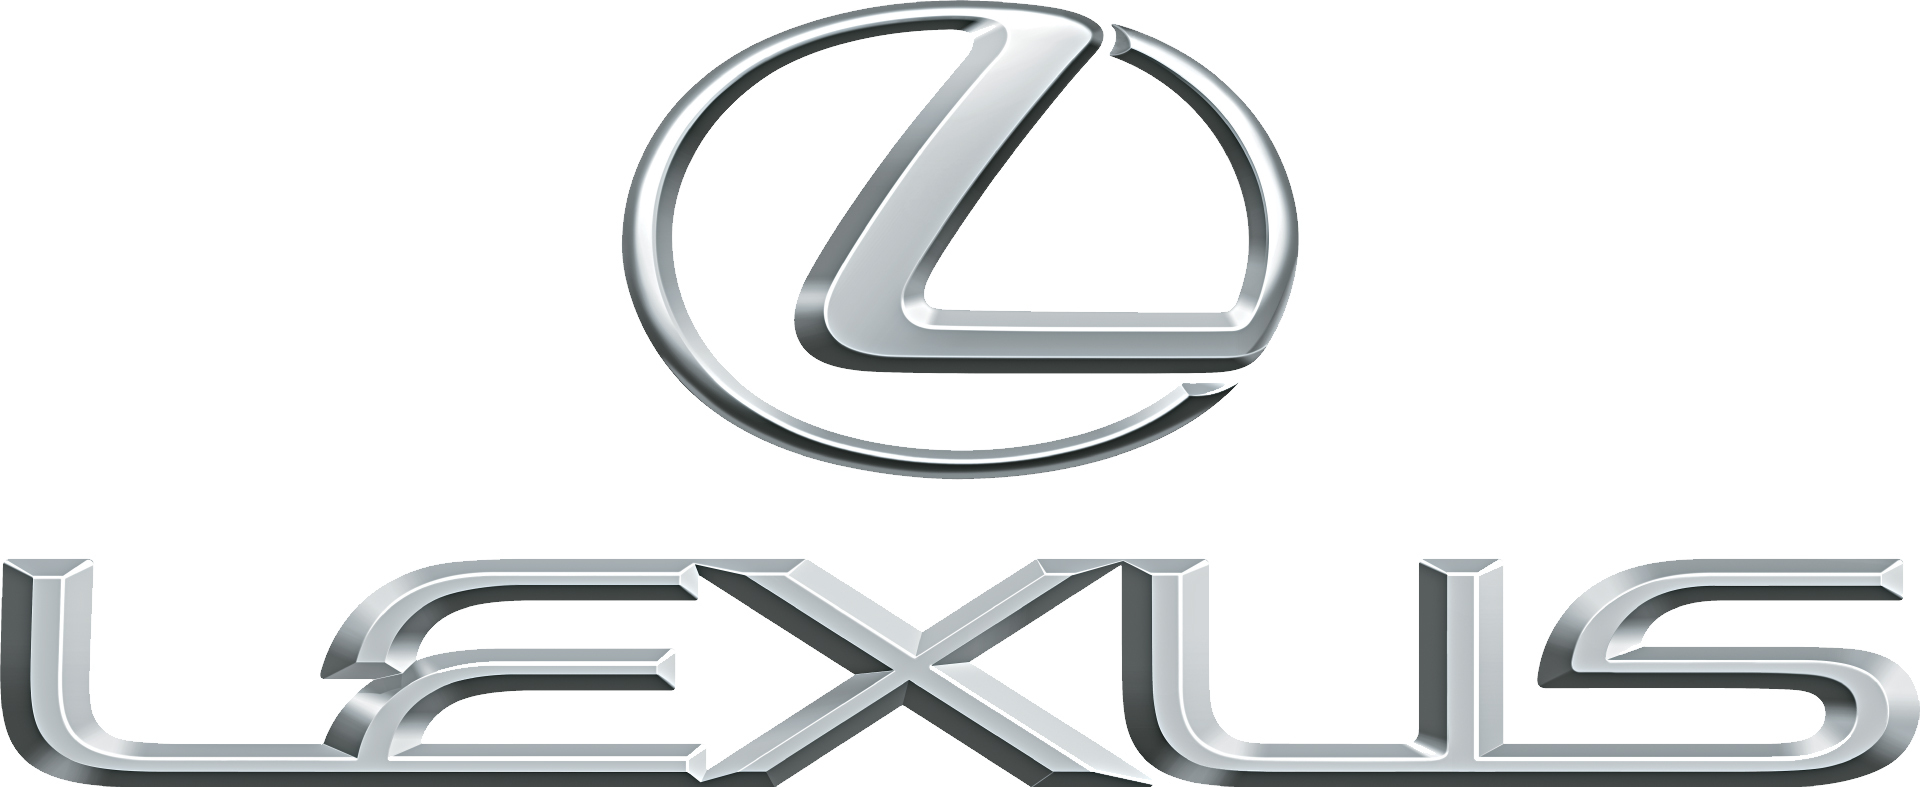 Bảng giá xe ô tô Lexus trên thị trường cập nhật tháng 9/2015